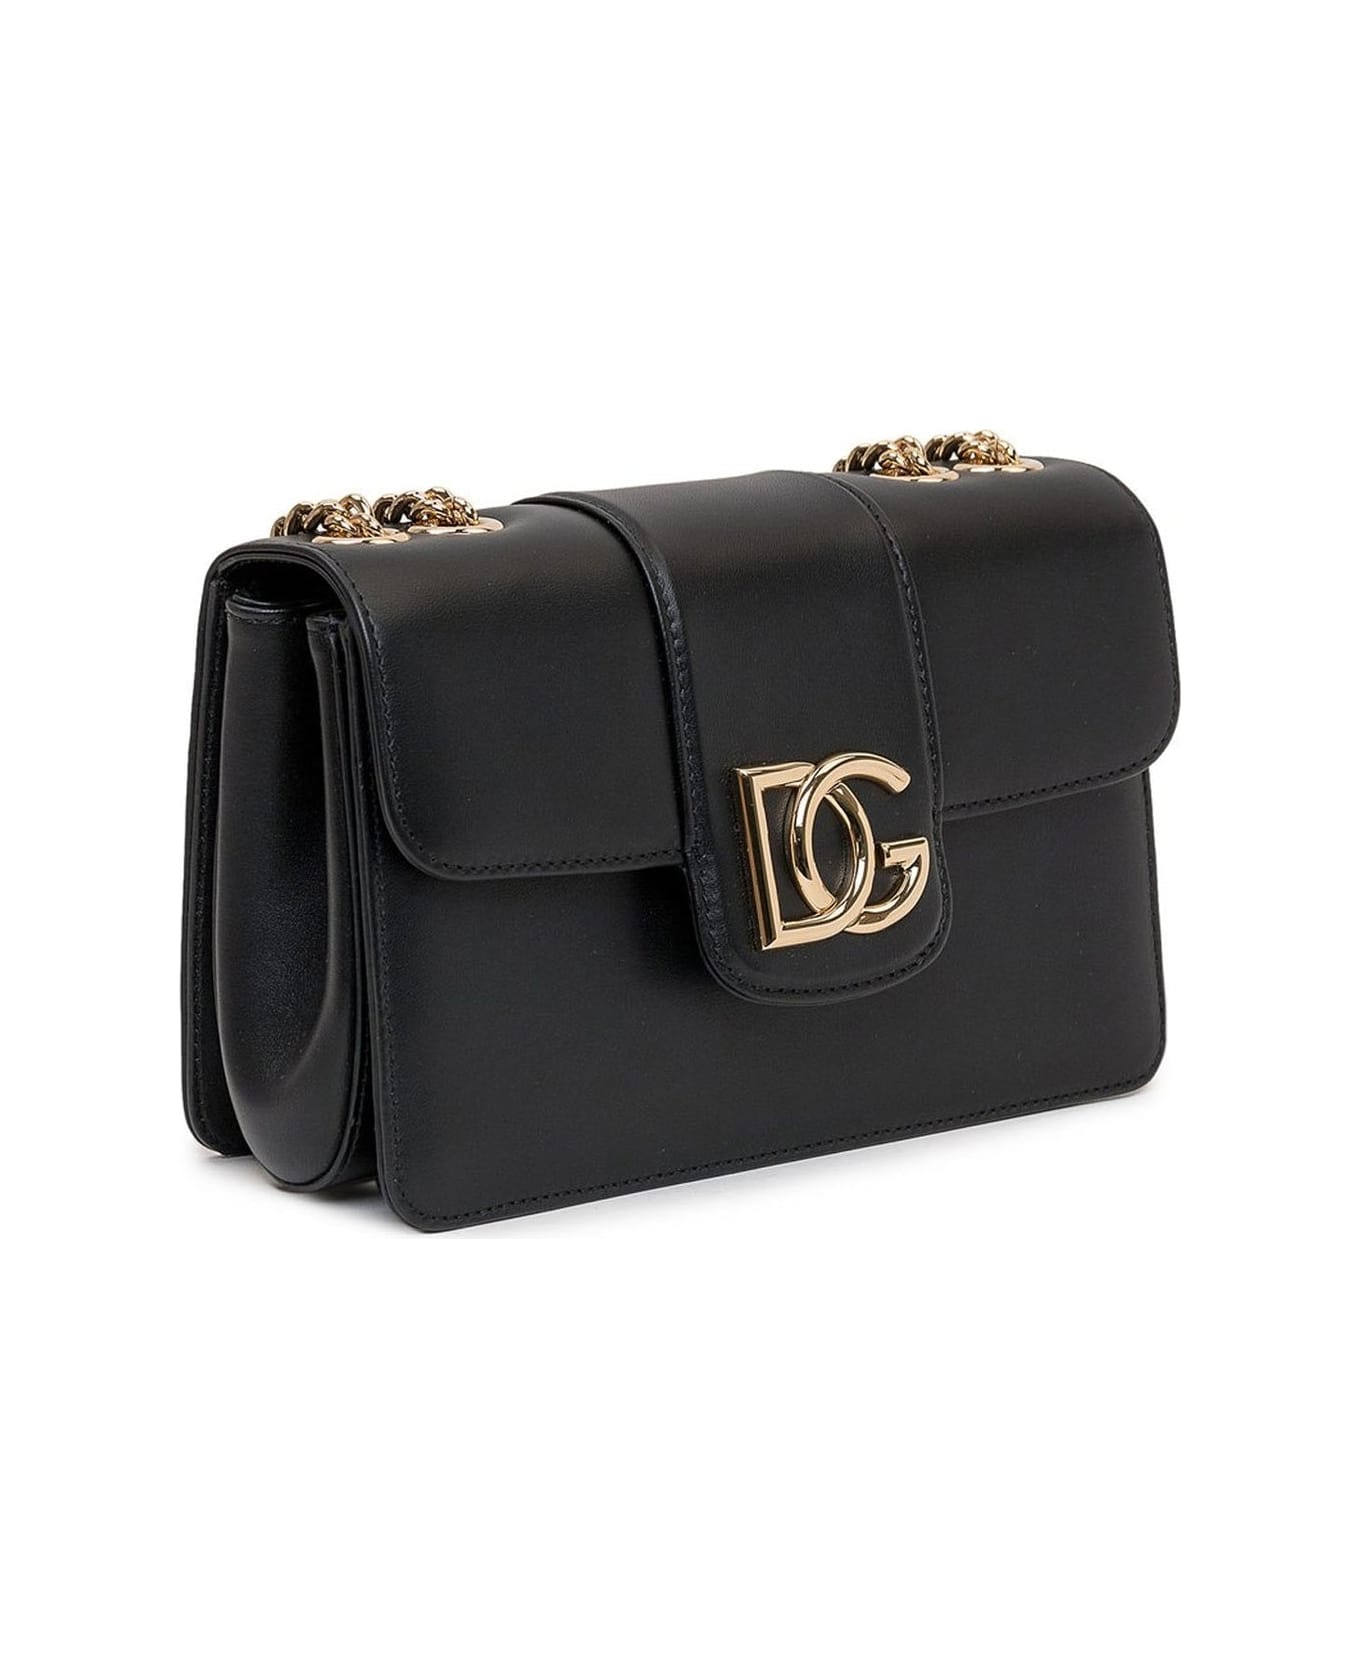 Dolce & Gabbana Leather Shoulder Bag - Black ショルダーバッグ